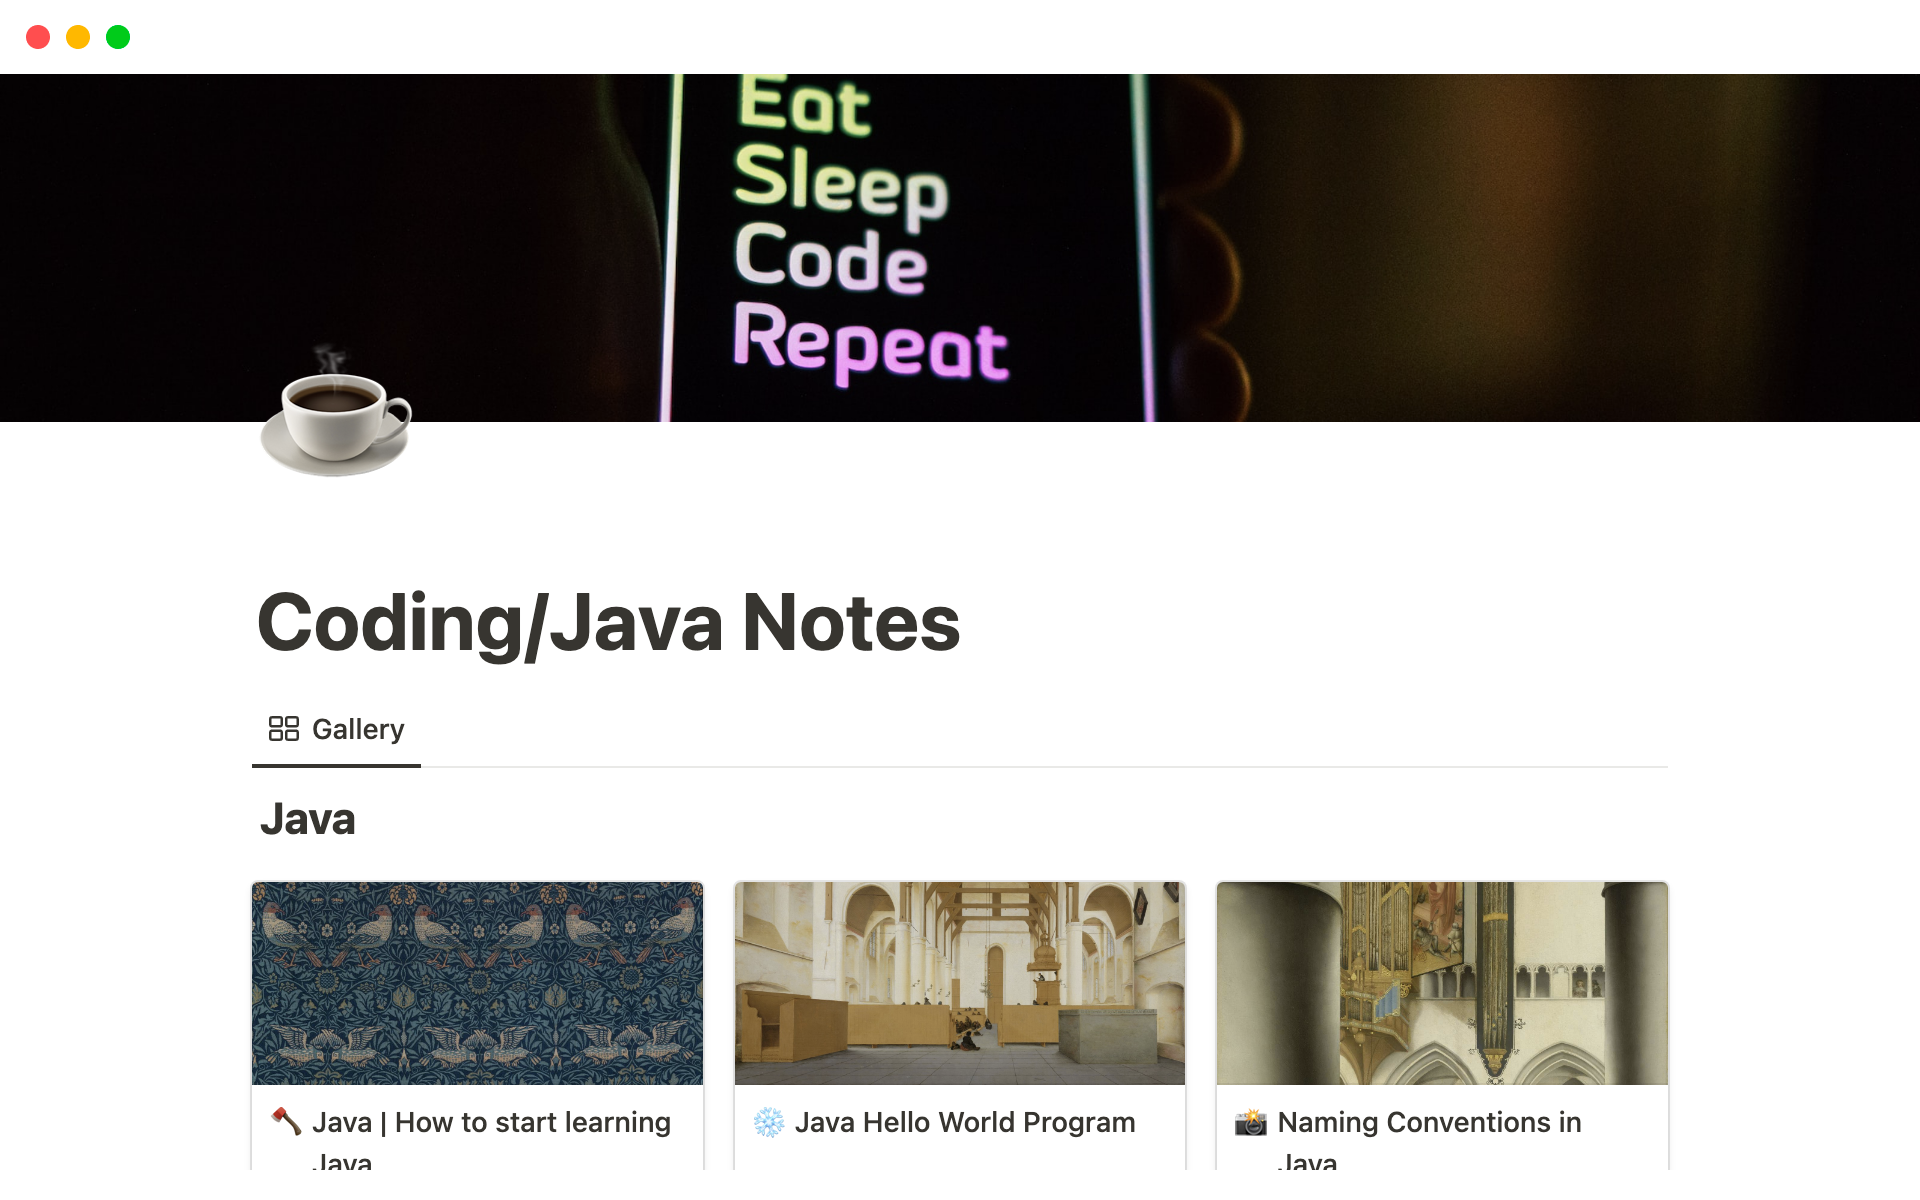 Coding / Java Notesのテンプレートのプレビュー